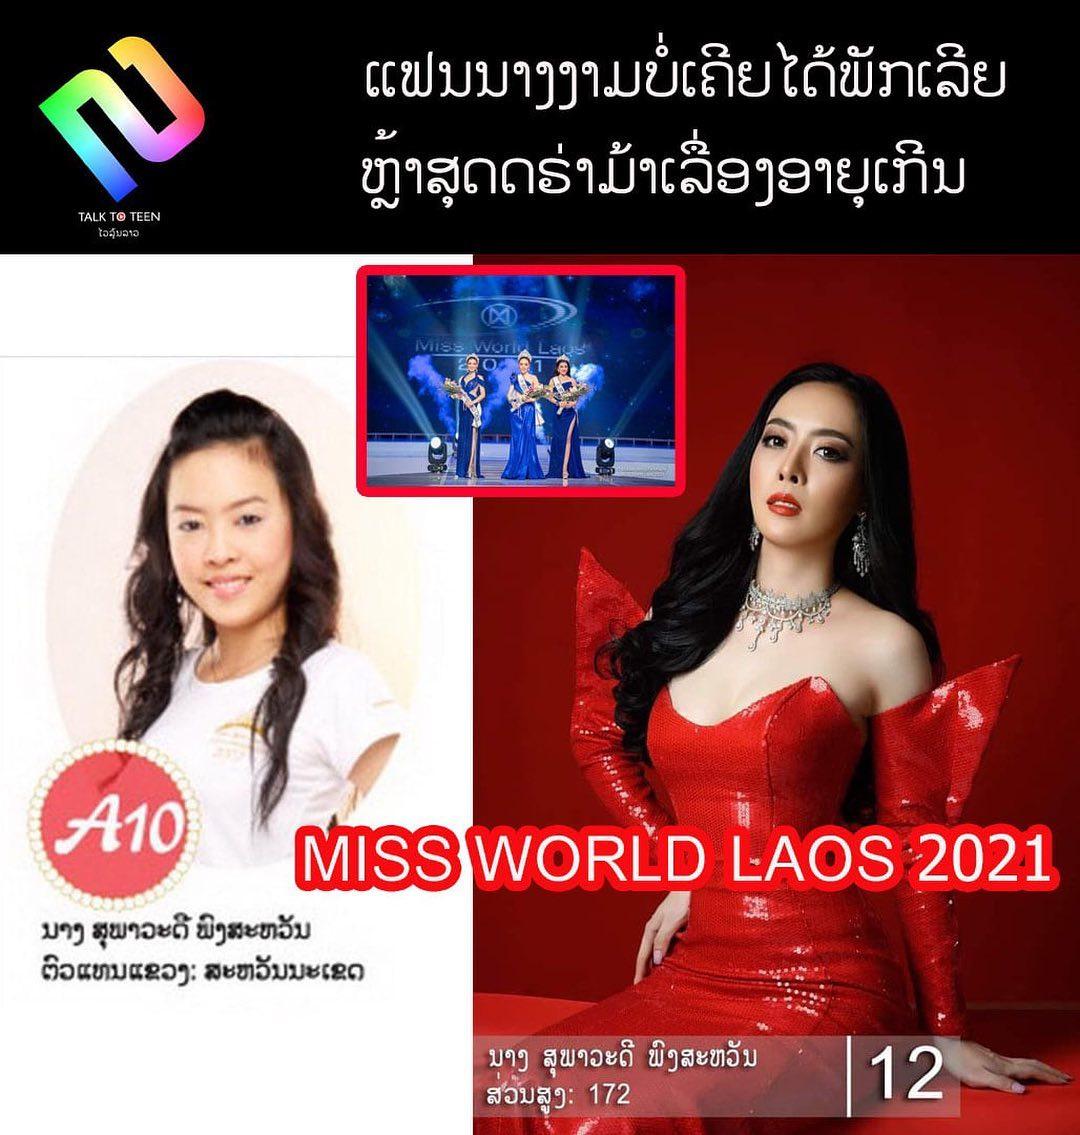 class="content__text"
 ແຟນນາງງາມລາວບໍ່ເຄີຍໄດ້ພັກເລີຍ ຫາກໍ່ຈົບດຮ່າມ້າຊຸດປາກັດລາວຕໍ່ມາອີກກັບດຣ່າມ່າຜູ້ທີ່ໄດ້ມົງເວທີ Miss World Laos 2021 ທີ່ປະກວດຫາກໍ່ຈົບໄປມື້ຄືນວານນີ້ເຊິ່ງຄົນທີ່ໄດ້ມົງມີດັ່ງນີ້: 
ນາງ ສຸພາວະດີ ພົງສະຫວັນ Miss World Laos 2021 
ນາງ ພອນວິໄລ ຫລວງລາດ ຮອງອັນດັບ1 Miss World Laos 2021
ນາງ ອະລິຍາ ອິນທະວົງ ຮອງອັນດັບ2 Miss World Laos 2021
ແຕ່ດຮ່າມ່າບໍ່ໄດ້ຈົບເທົ່ານີ້ມີຄົນຕາດີໄປເບິ່ງປະຫວັດຄືນຂອງ ນາງ ສຸພາວະດີ ພົງສະຫວັນ Miss World Laos 2021 ເຄີຍປະກວດ Miss Laos ມາກ່ອນເປັນຕົວແທນແຂວງສະຫວັນນະເຂດ ເຊິ່ງຊາວເນັດຄິດໄລ່ອາຍຸຈາກຕອນນັ້ນຈົນຮອດຕອນນີ້ແລ້ວອາຍຸໜ້າຈະກາຍການກໍານົດຂອງກອງປະກວດໃຫຍ່ທີ່ຕັ້ງໄວ້ແມ່ນ 17 ຫາ 26 ປີ ເຊິ່ງຊາວເນັດຄາດການວ່າປັດຈຸບັນໜ້າຈະໄດ້ອາຍຸ 31 ປີແລ້ວ ເຊິ່ງຄາວນີ້ທາງກອງ ຫຼື ສາວ ສຸພາວດີ ພົງສະຫວັນກໍ່ຍັງບໍ່ໄດ້ເຄື່ອນໄຫວອອກຖະແຫຼງການເທື່ອ ວ່າກະແສທີ່ເປັນຢູ່ແມ່ນຄວາມຈິງຫຼືບໍ່? ຖ້າຕິດຕາມຕອນຕໍ່ໄປເດີ້ທຸກຄົນ. 
 #MissWorldLaos2021 #ກະແສດຣ່າມ່າປະຈໍາວັນ #ແຟນນາງງາມລາວບໍ່ເຄີຍໄດ້ພັກ 
 